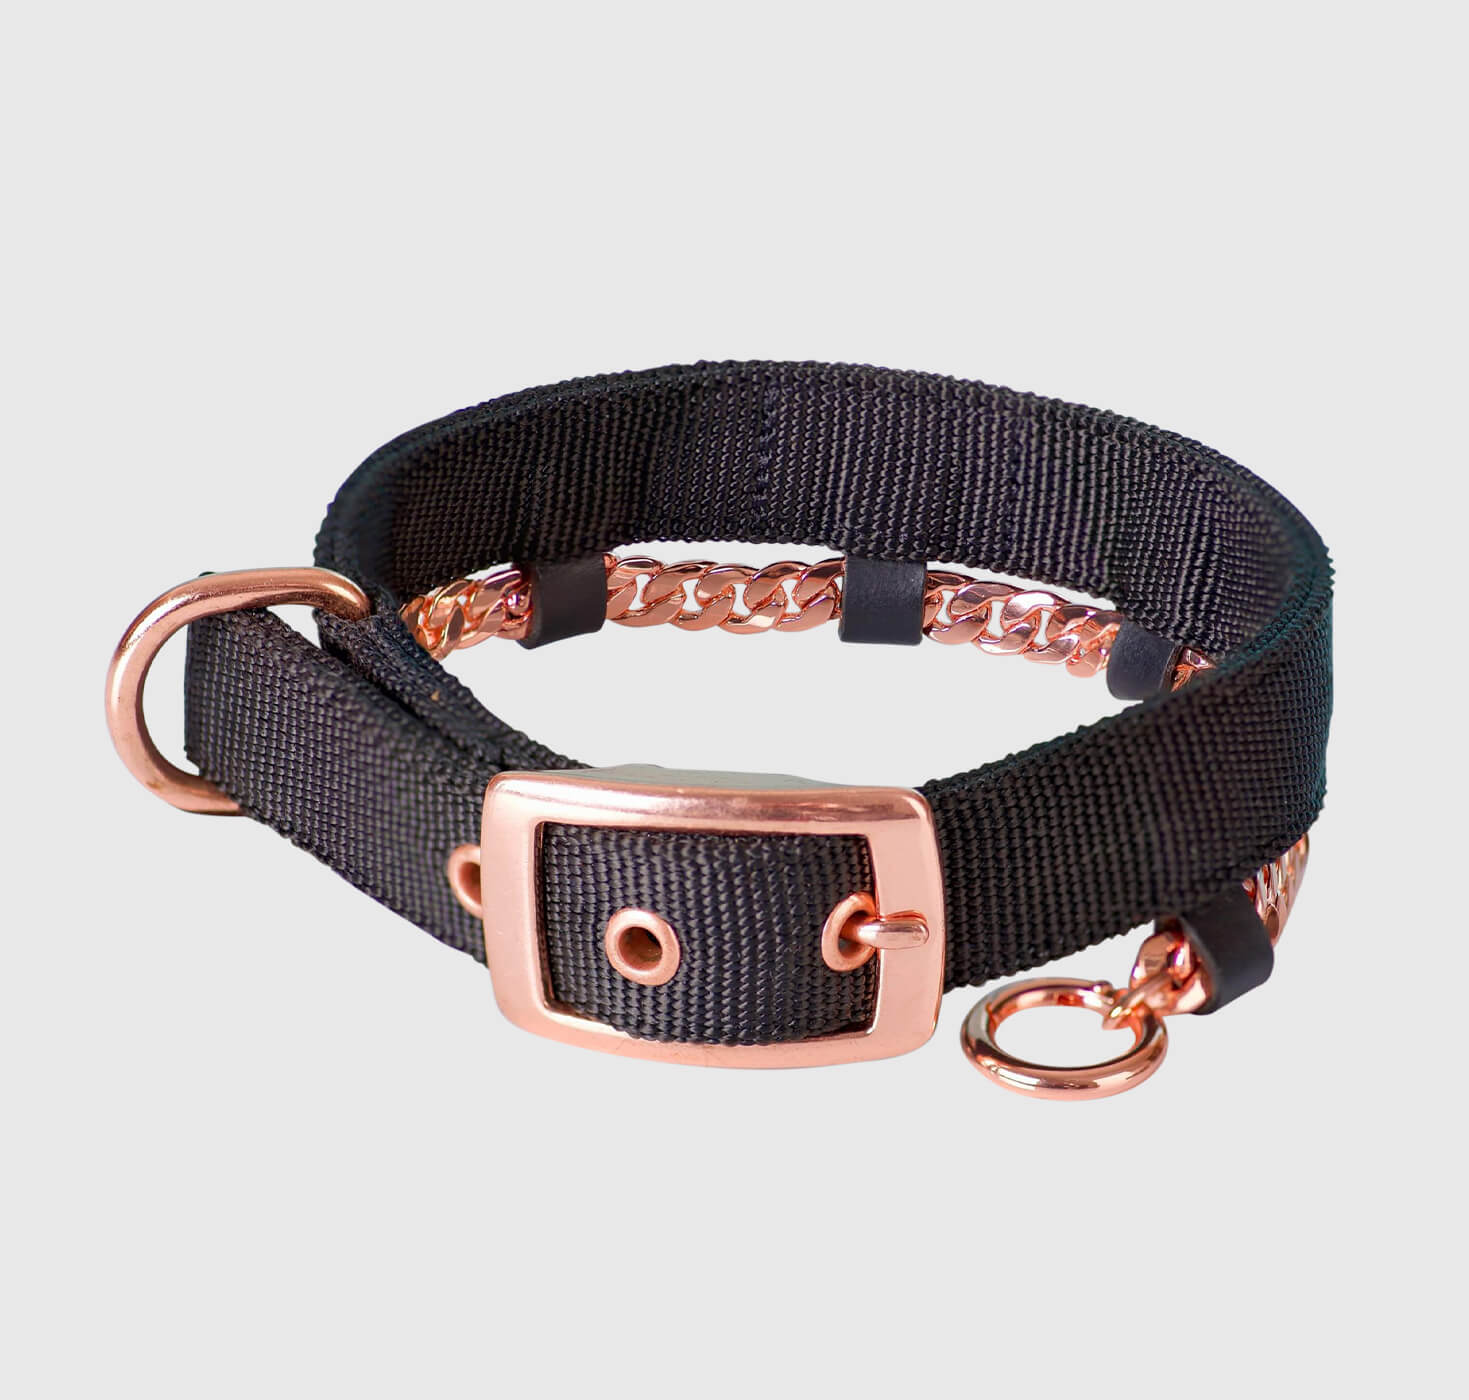 KB Collar Nylon with Copper Chain | Dog Copper Collars Australia| KB Copper Collars